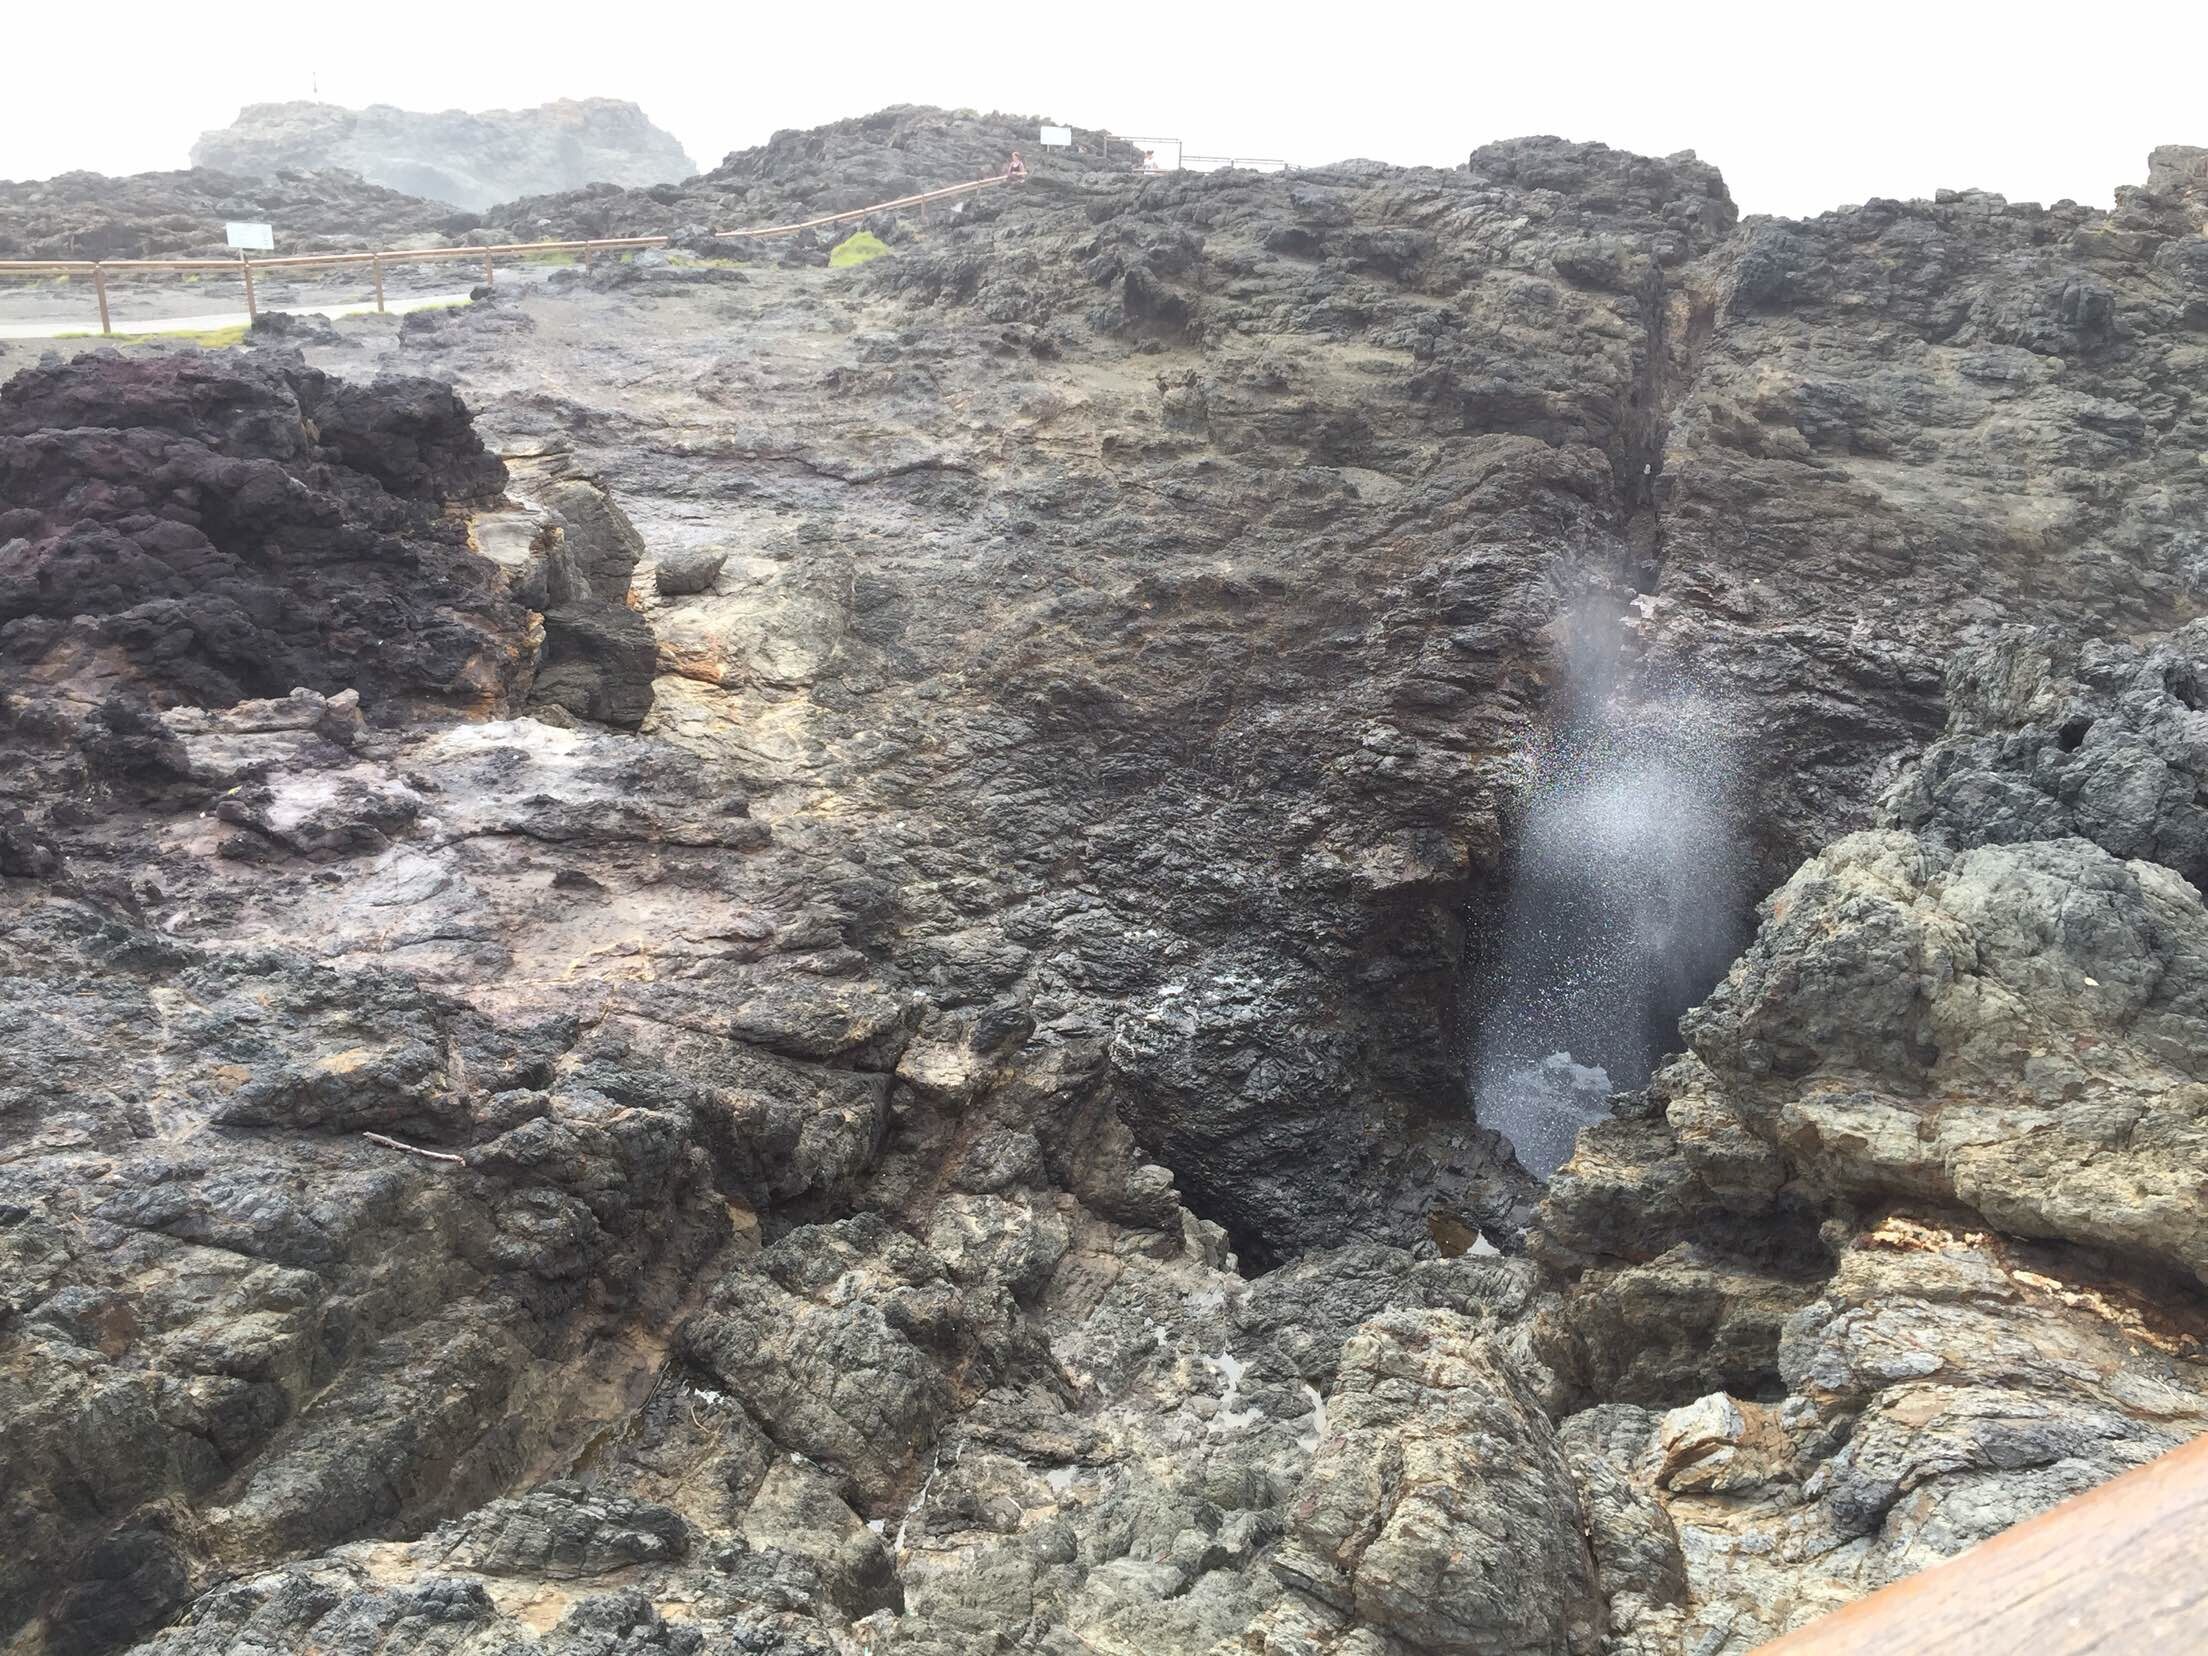 再往南行我们来到了凯亚玛喷水洞。凯亚玛的喷水洞很有名。喷水洞是火山岩形成下大上小的洞穴，当海水涌入的